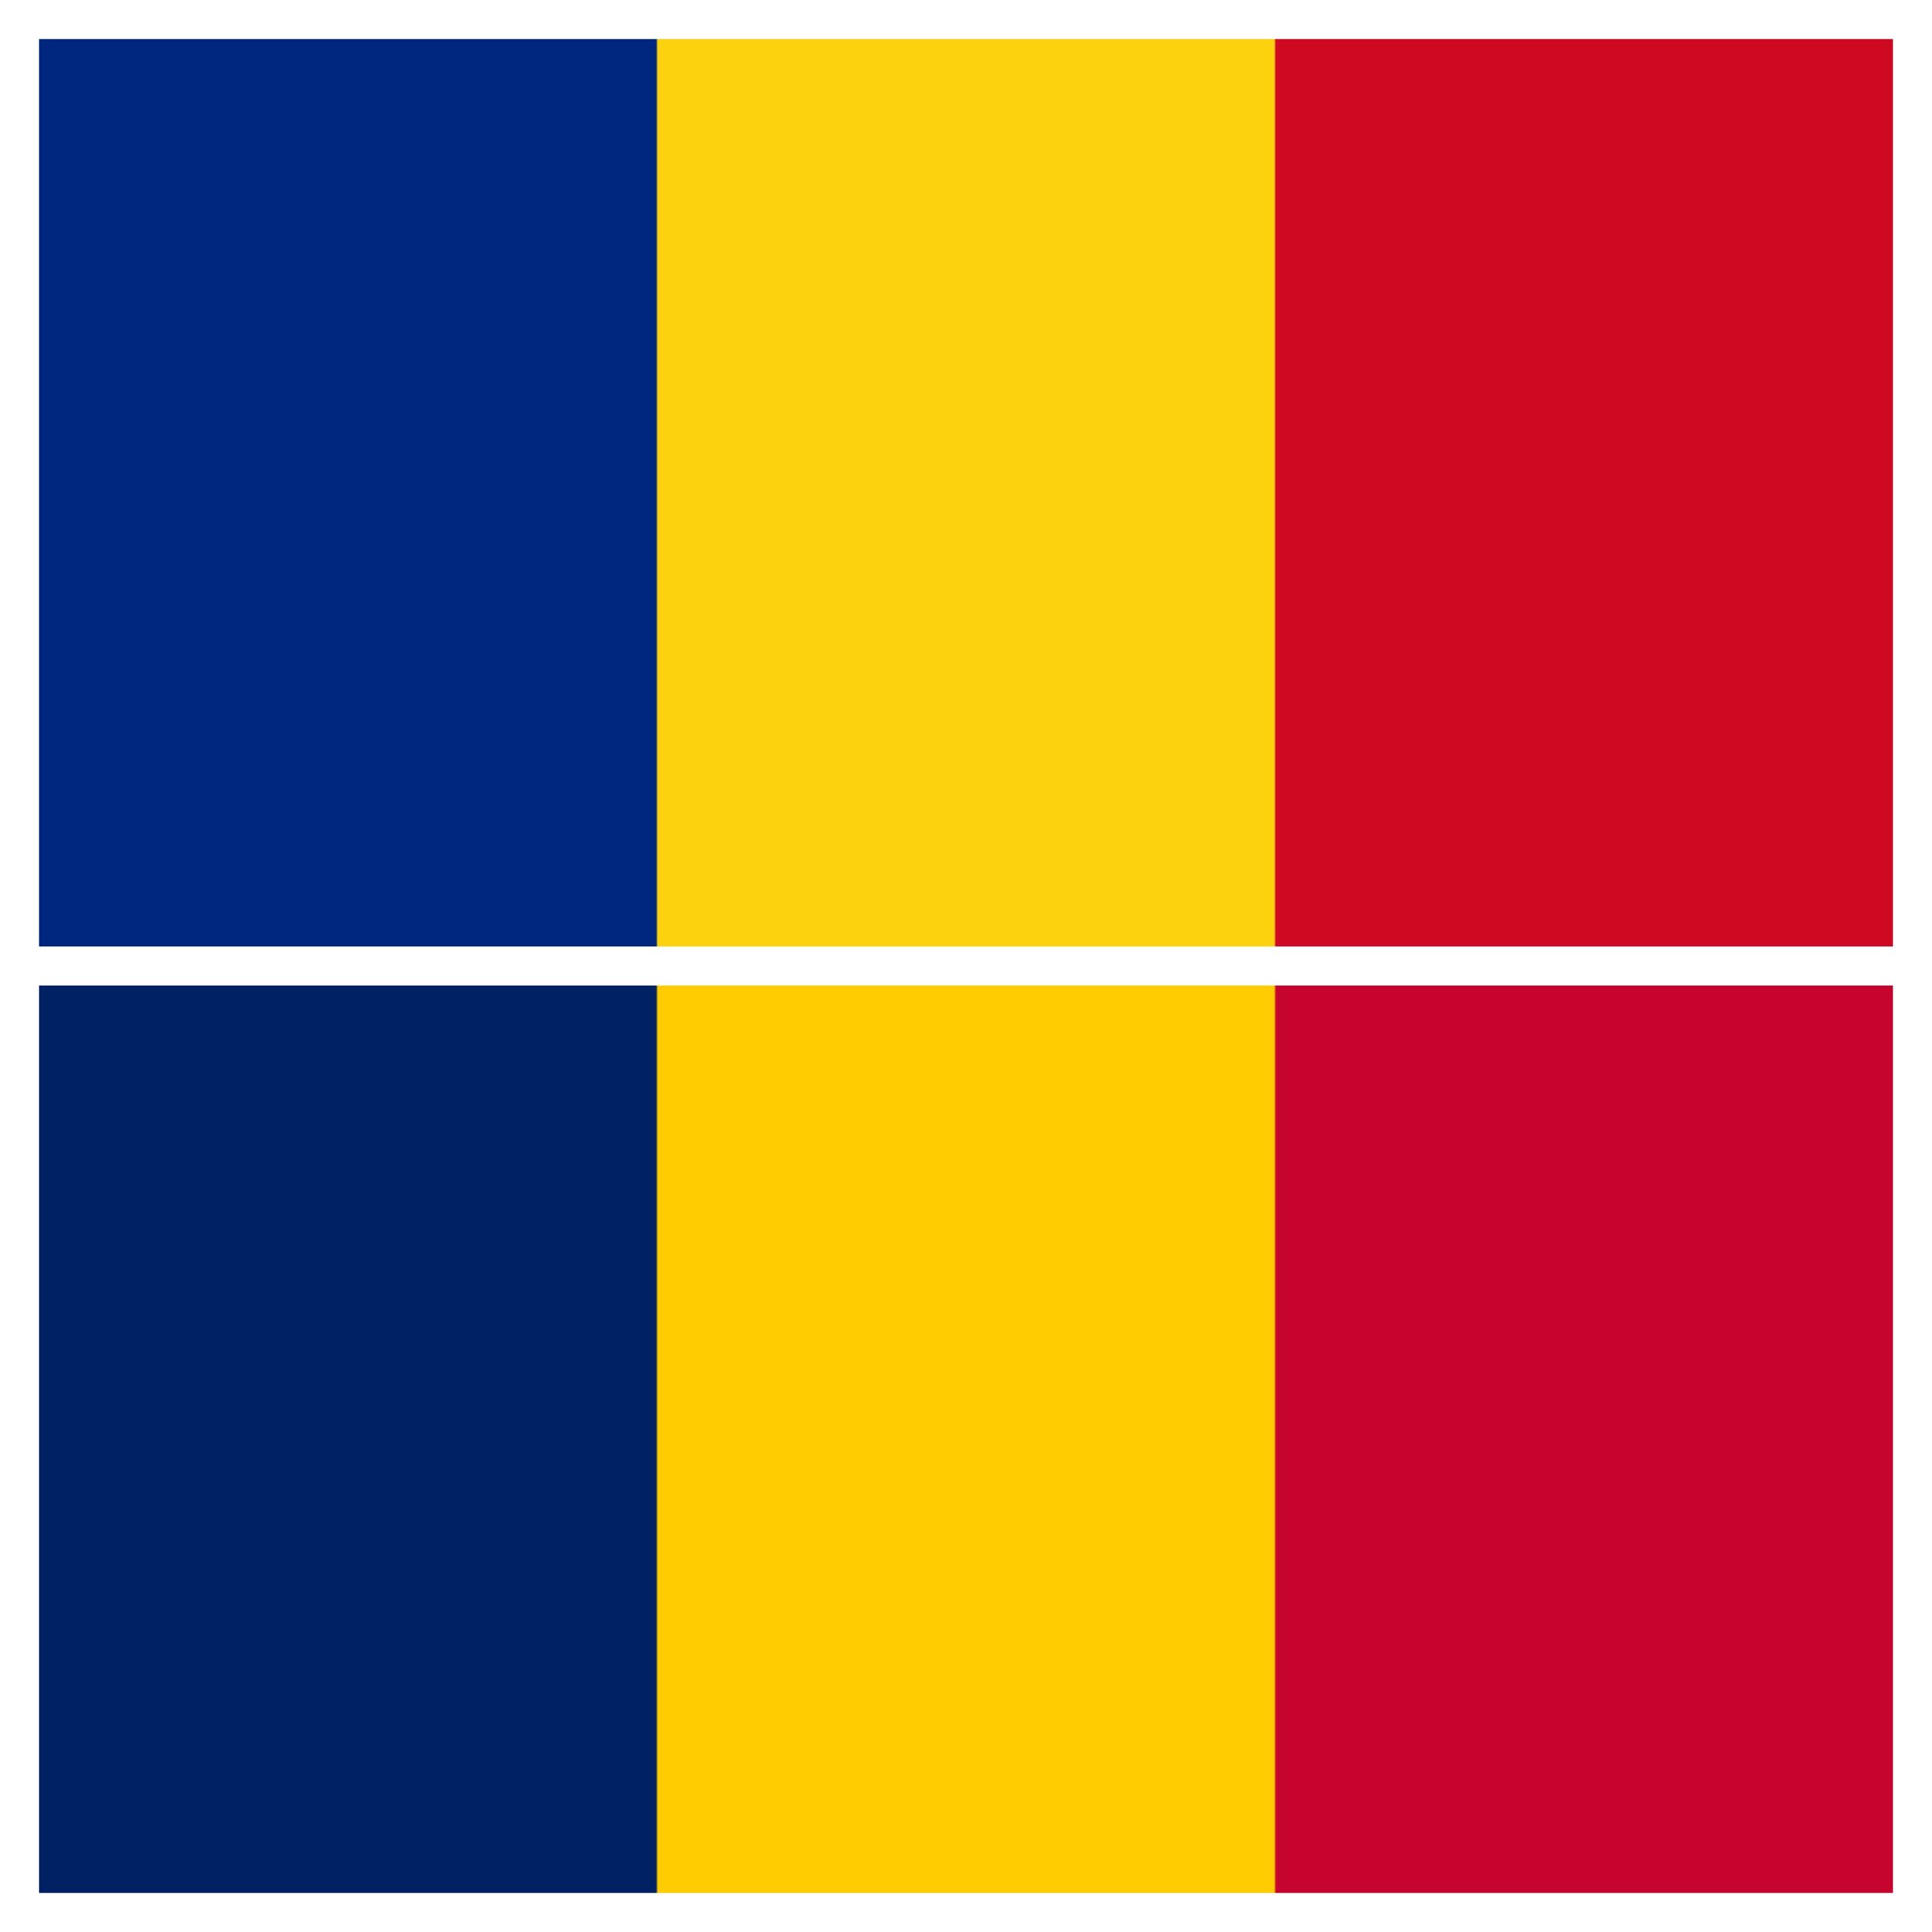 Steagul României vs Steagul Ciadului